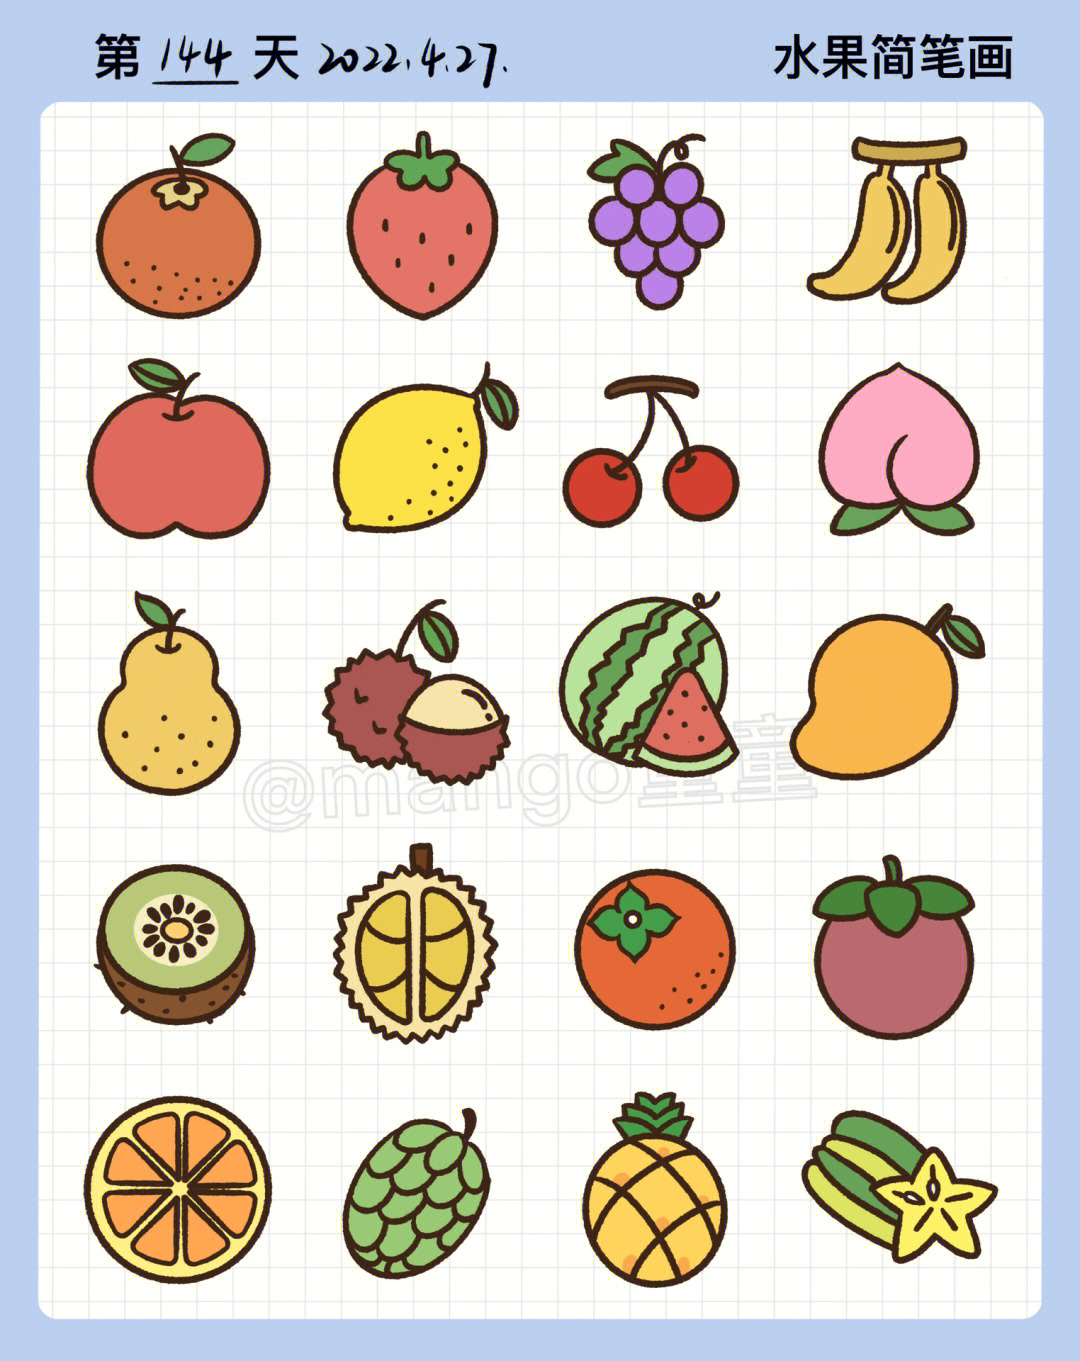 图片里面96今天更新的是各类水果简笔画素材99超级可爱简笔画素材